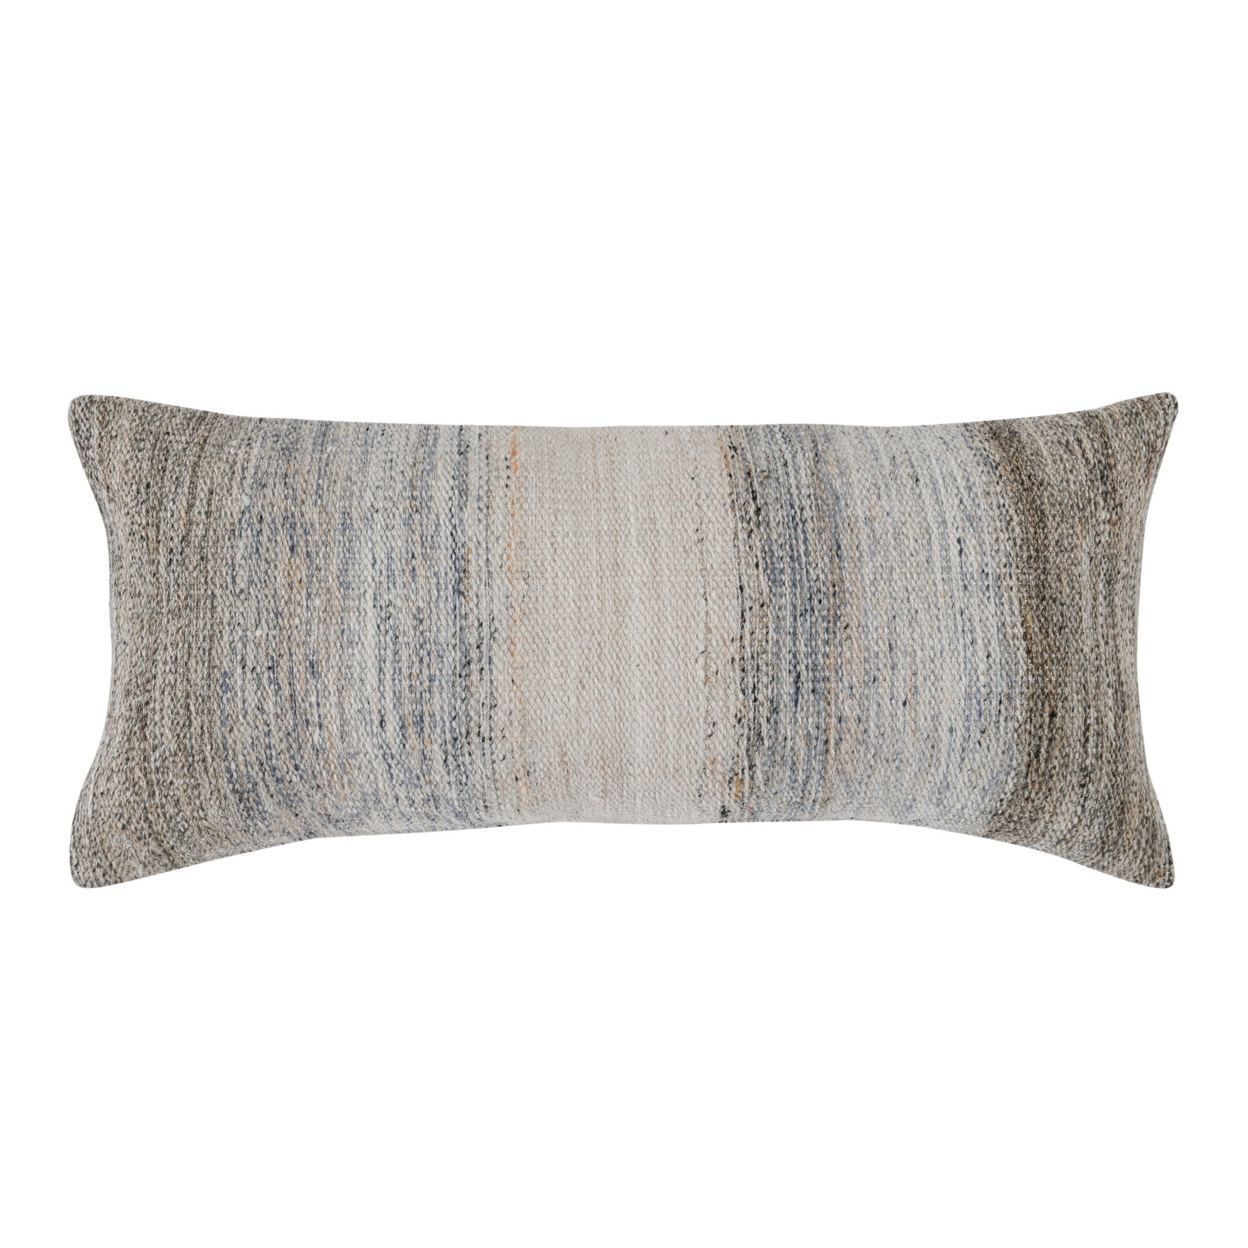 16 X 36 Accent Lumbar Pillow, Down Insert, Handwoven Textured Stripes, Gray- Saltoro Sherpi